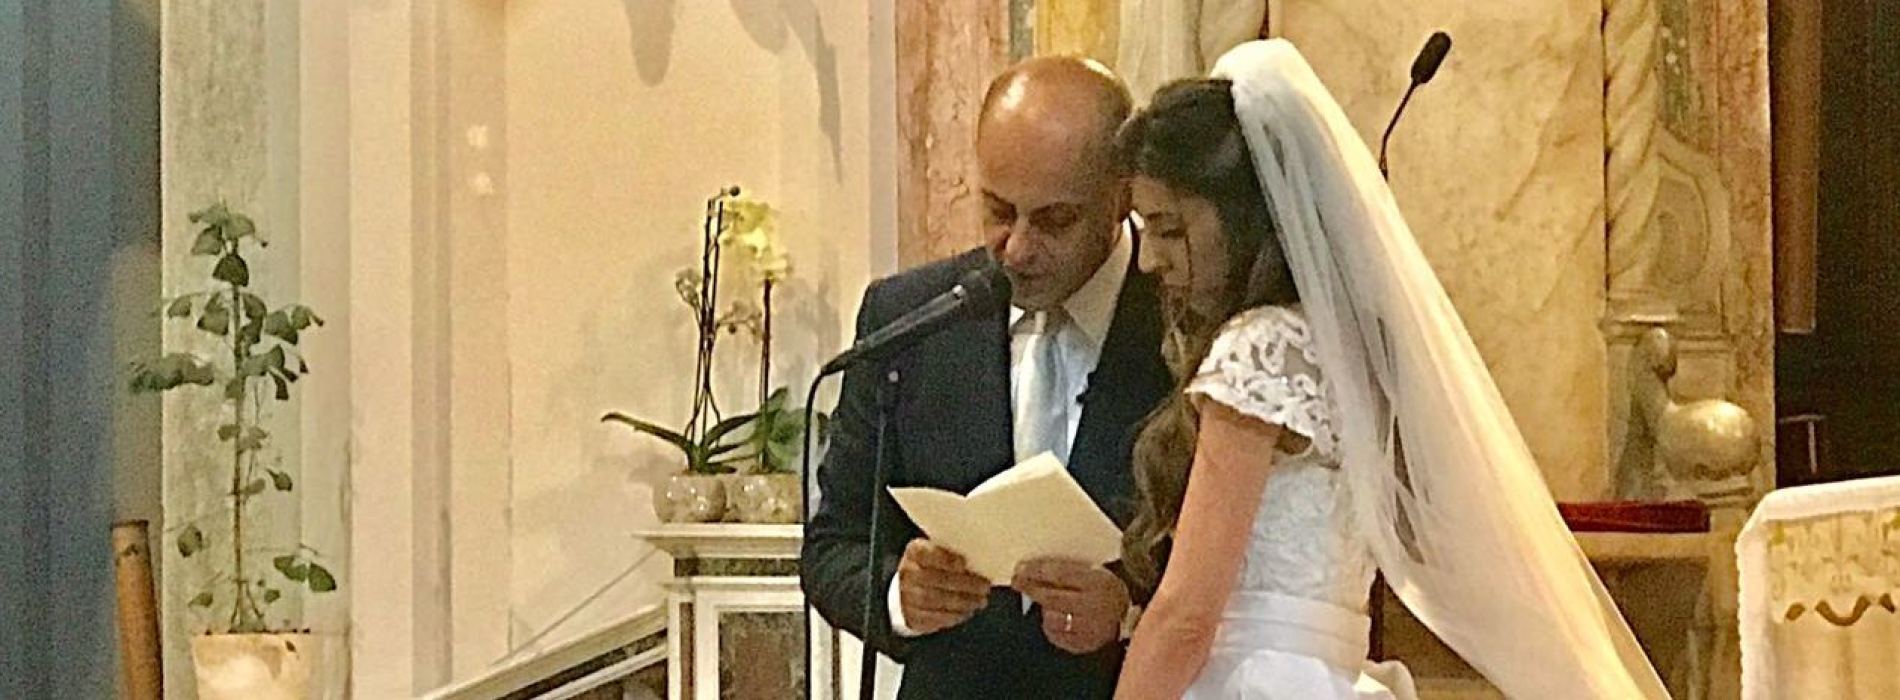 Art wedding, le nozze di Nicola Pedana ed Emilia Buoninconti